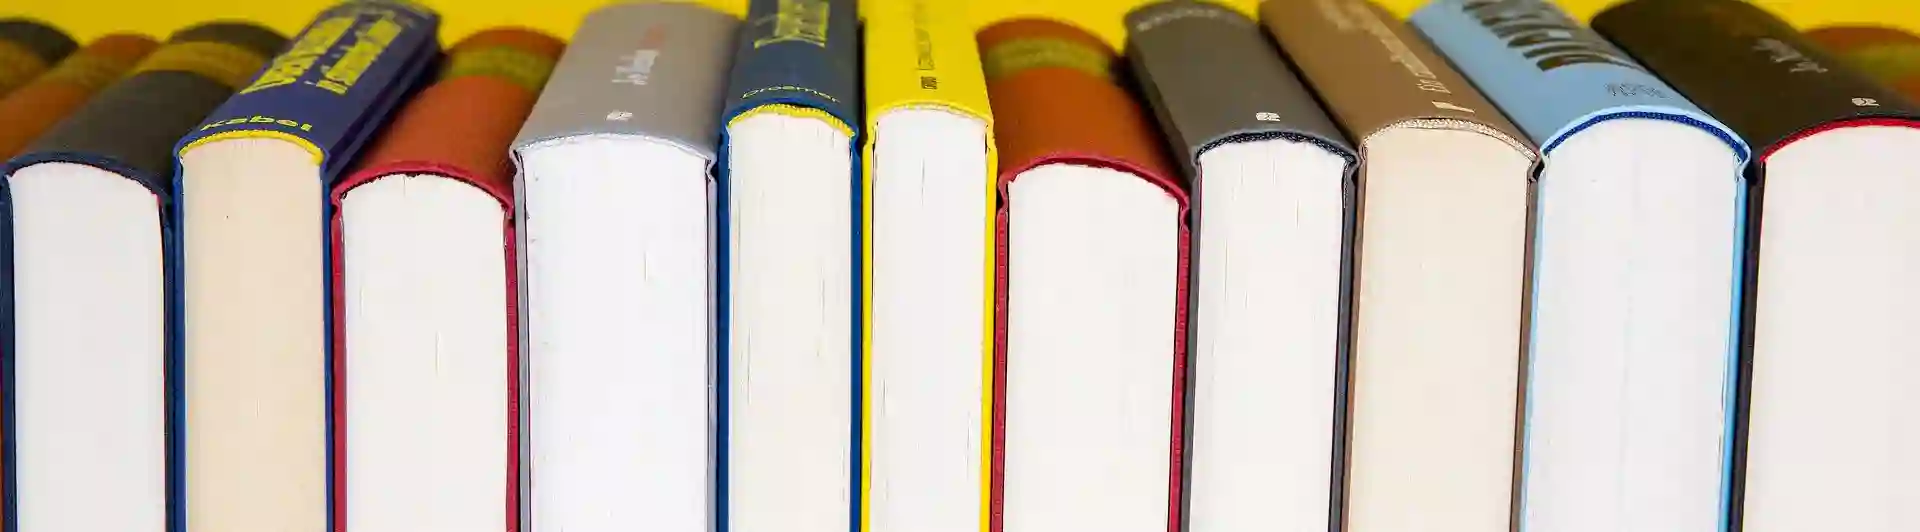 Bild som visar flera böcker framför gul bakgrund.